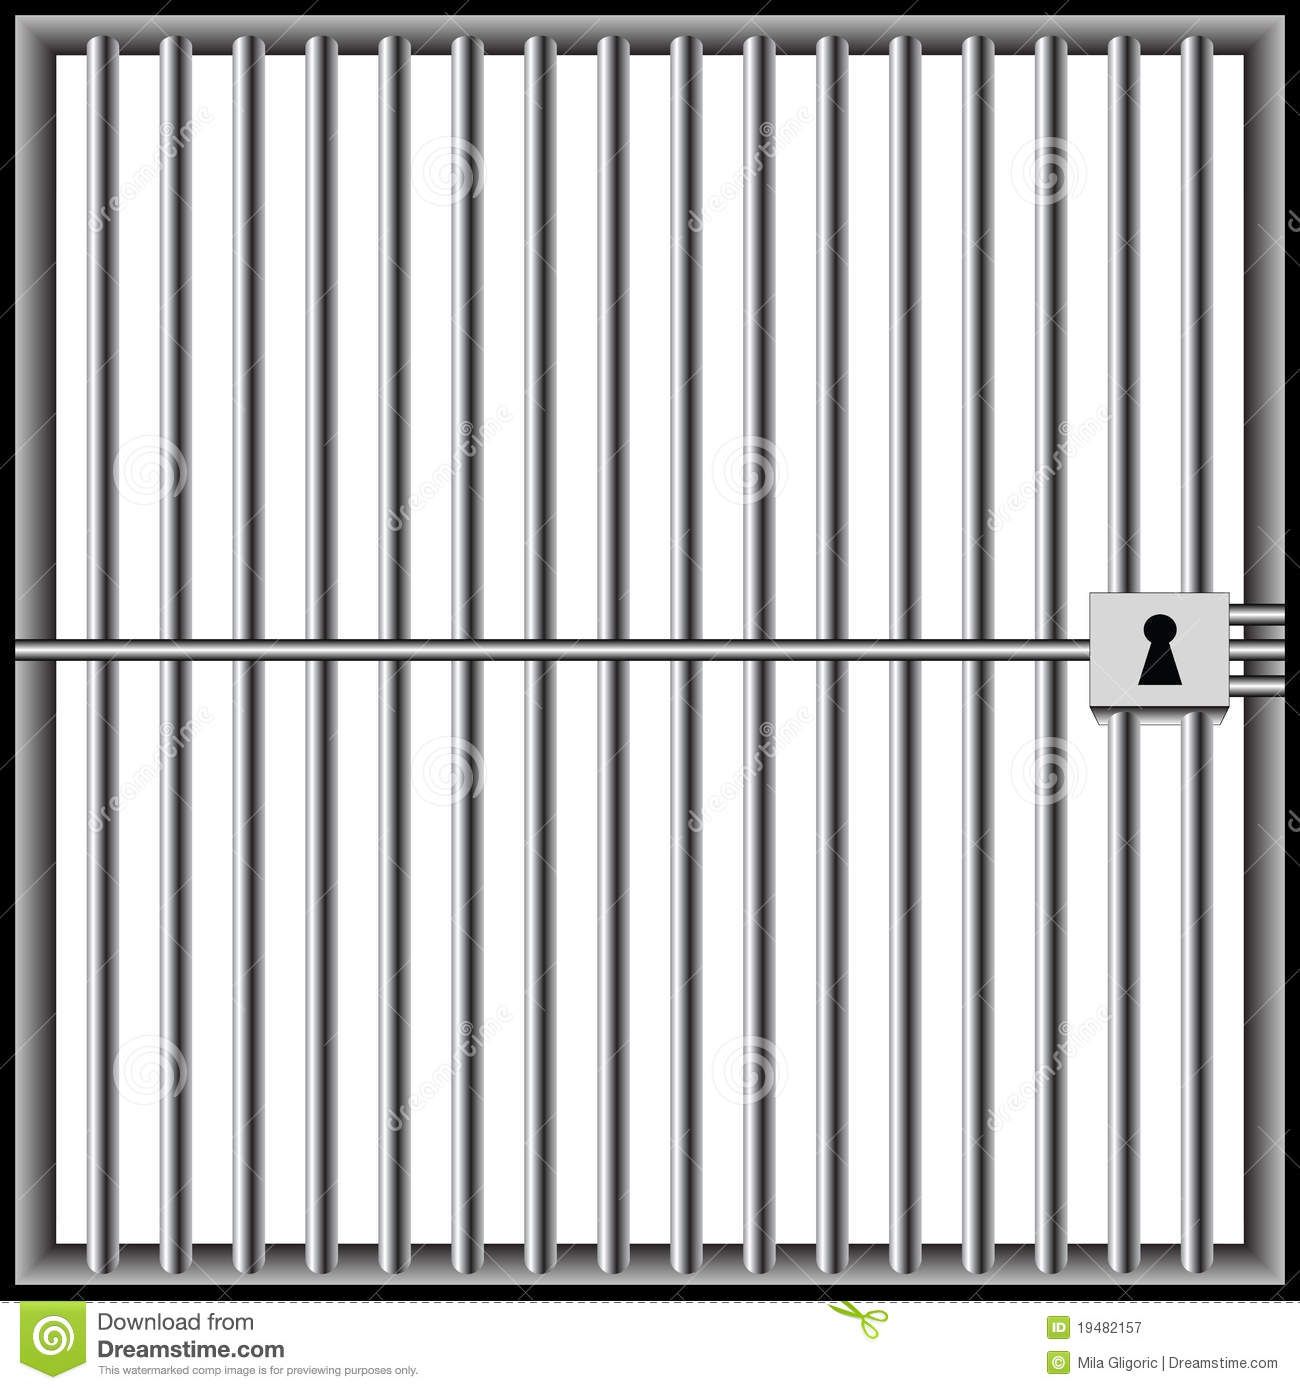 Jail clipart imprisonment. Imprisoned clip art bars